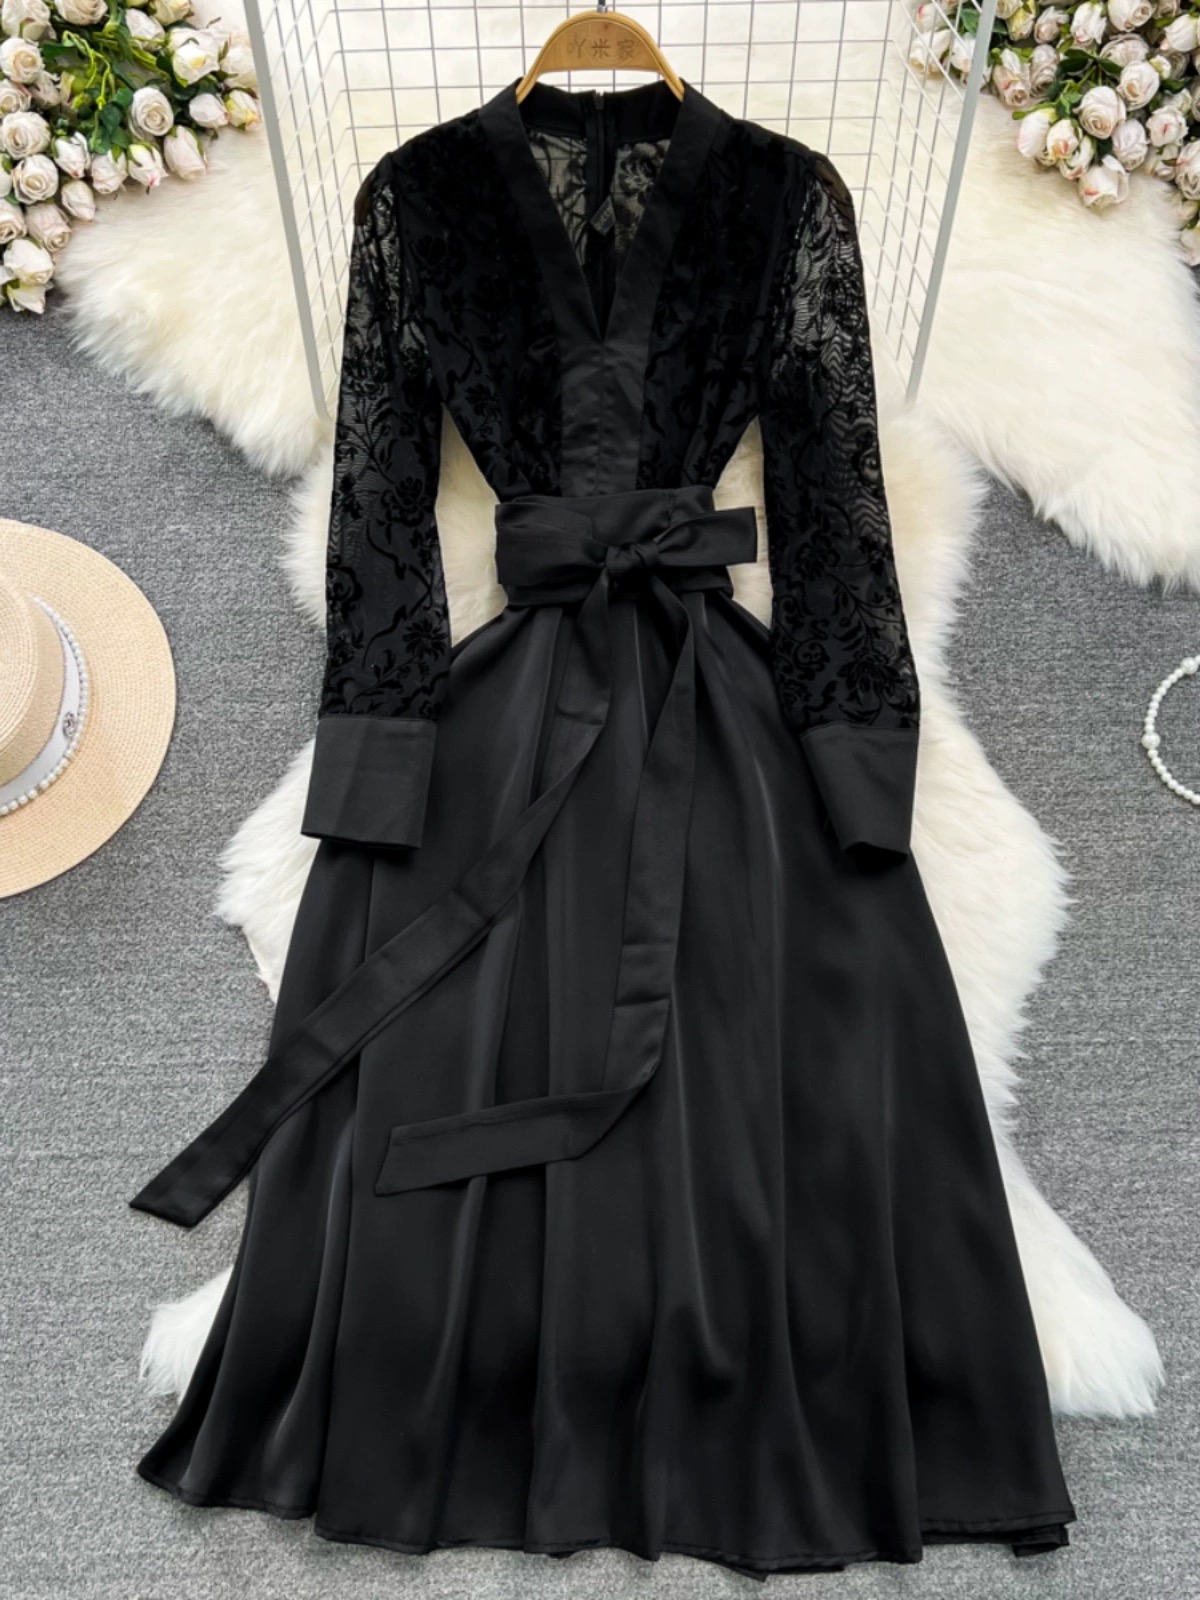 Fashionable,, Elegant Black Dress, Long-sleeved V-neck Mesh Patchwork Waist Slimming A-line Dress, Elegant Long Dress